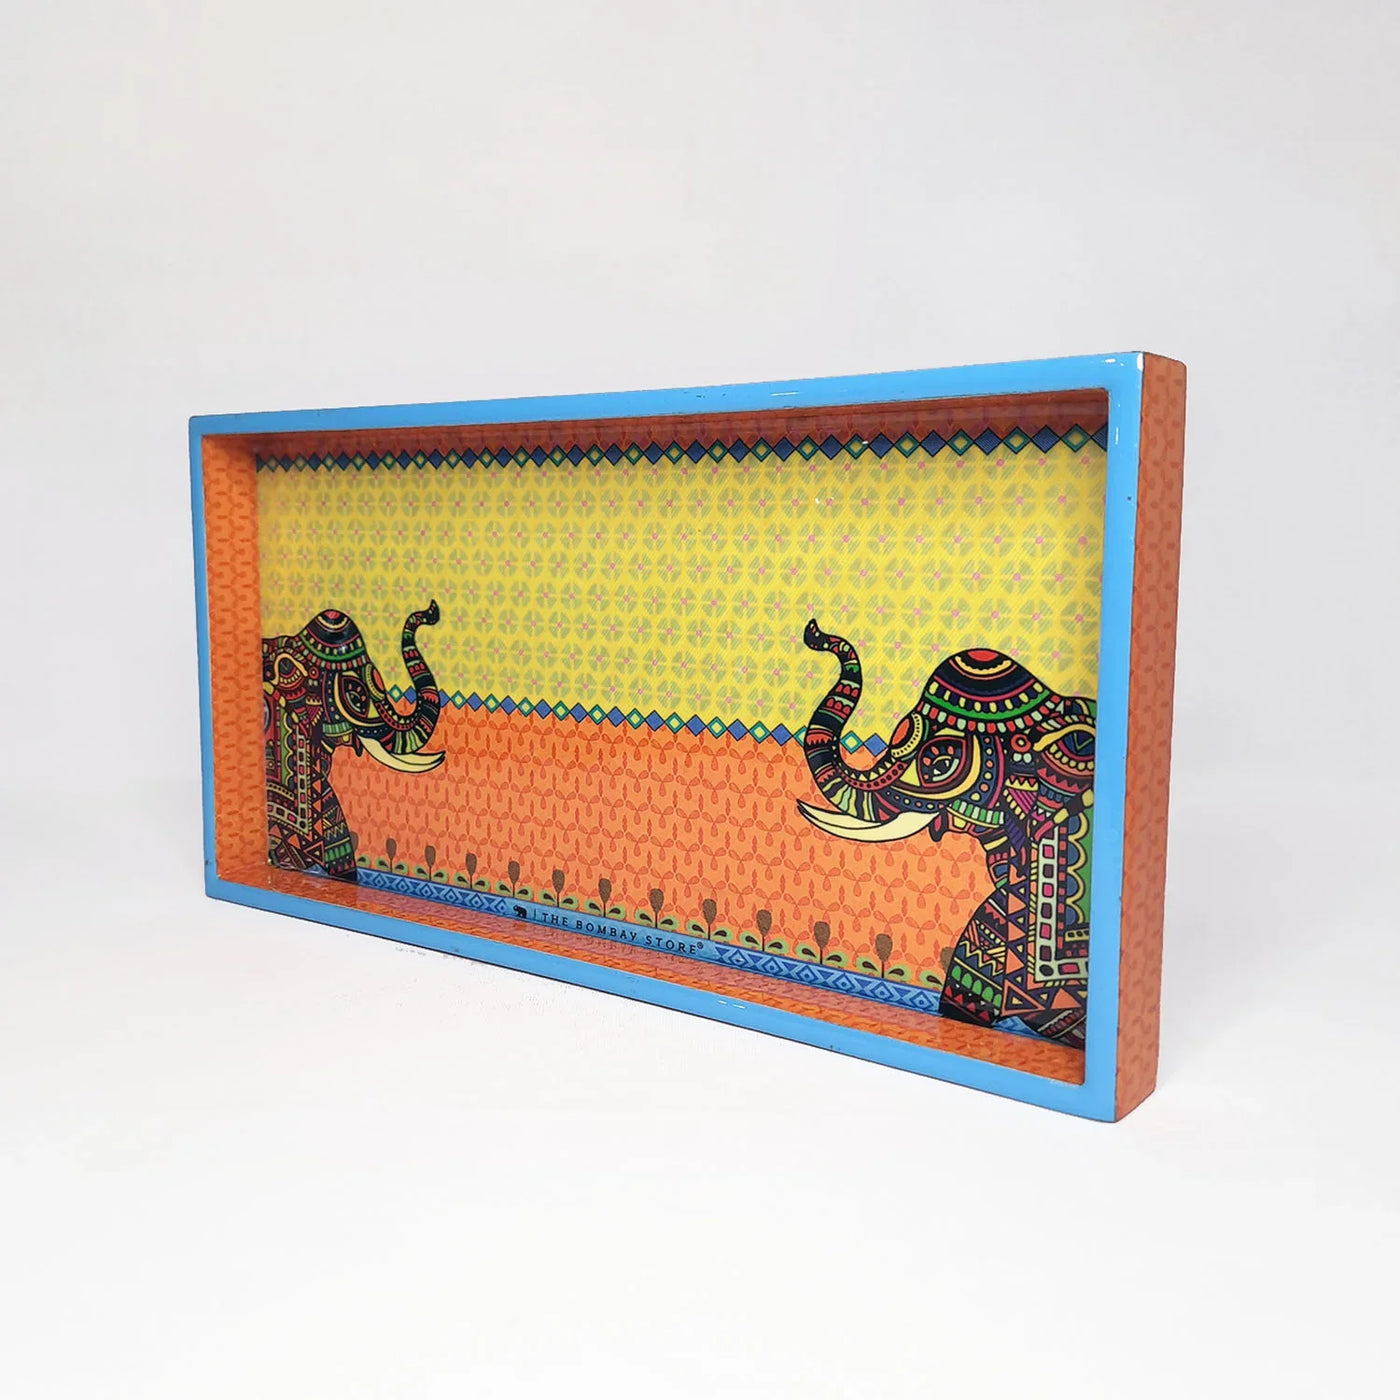 Royal Elephants Decorative Tray Small By Trendia Decor